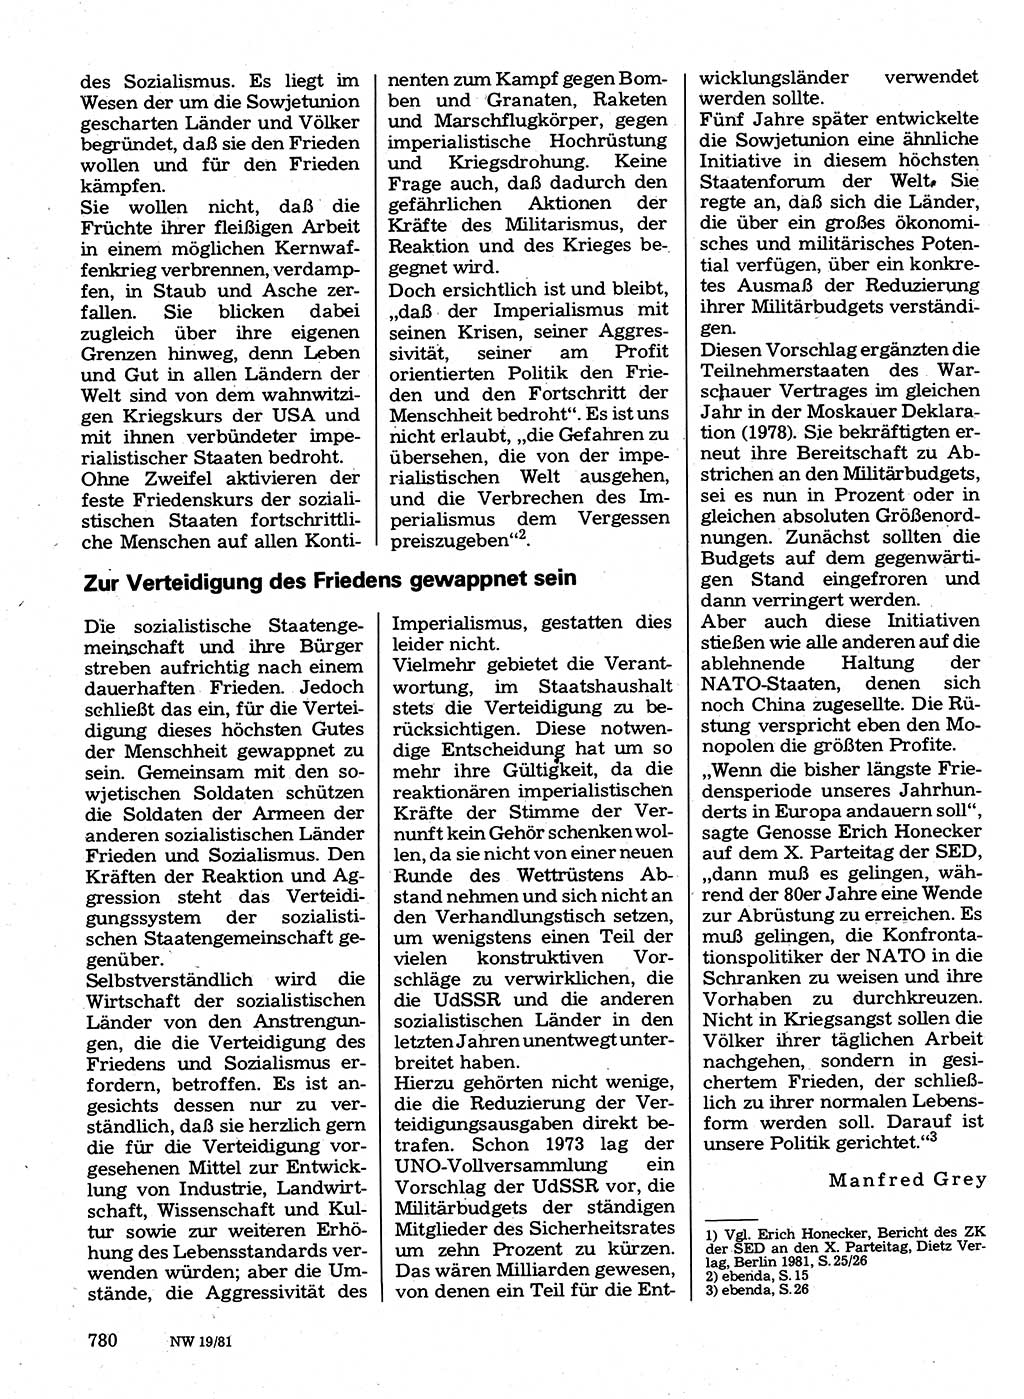 Neuer Weg (NW), Organ des Zentralkomitees (ZK) der SED (Sozialistische Einheitspartei Deutschlands) für Fragen des Parteilebens, 36. Jahrgang [Deutsche Demokratische Republik (DDR)] 1981, Seite 780 (NW ZK SED DDR 1981, S. 780)